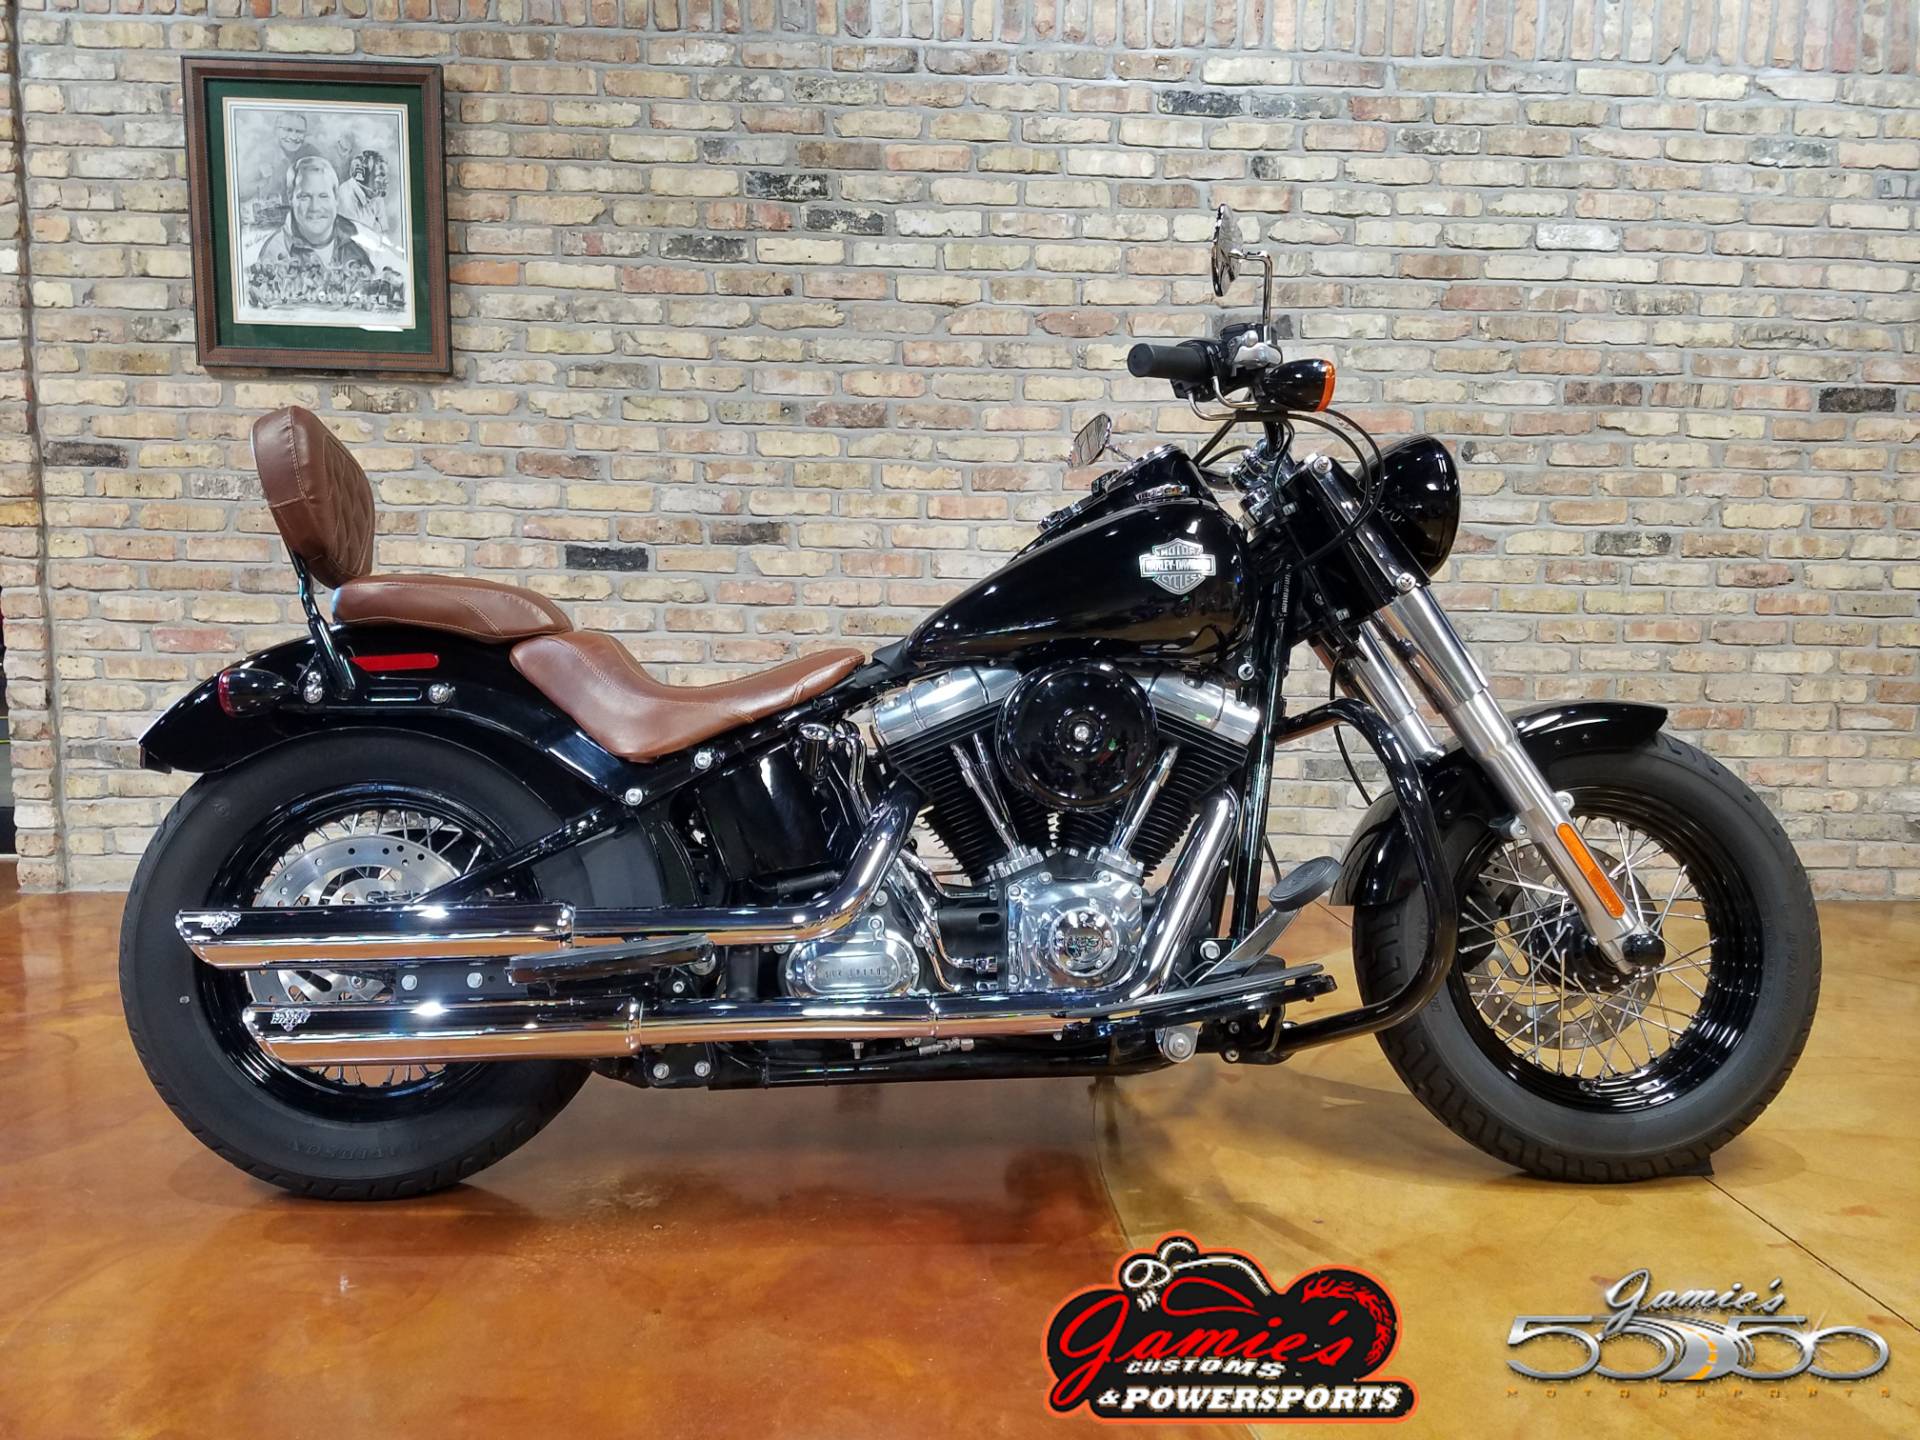 Used 2015 Harley Davidson Softail Slim Motorcycles In Big Bend Wi 4346 Vivid Black